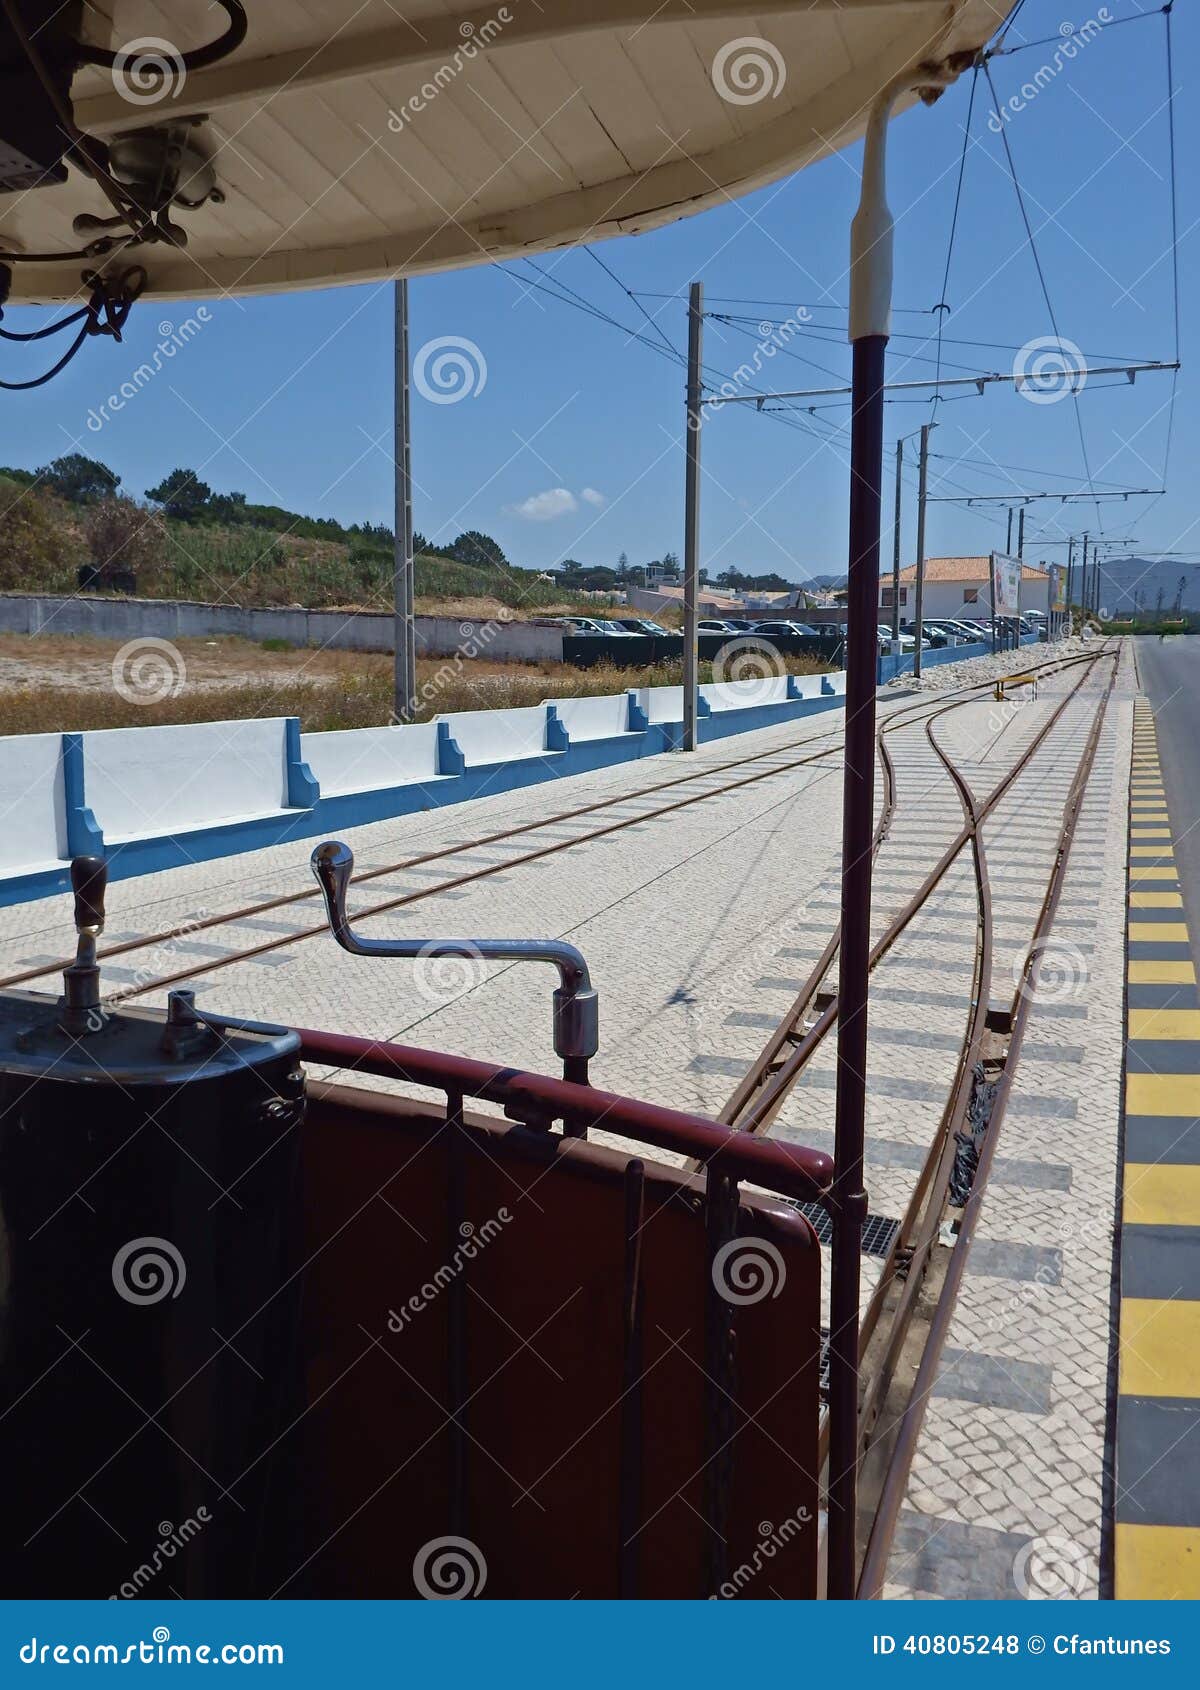 tramway car at praia das macas, sintra, portugal